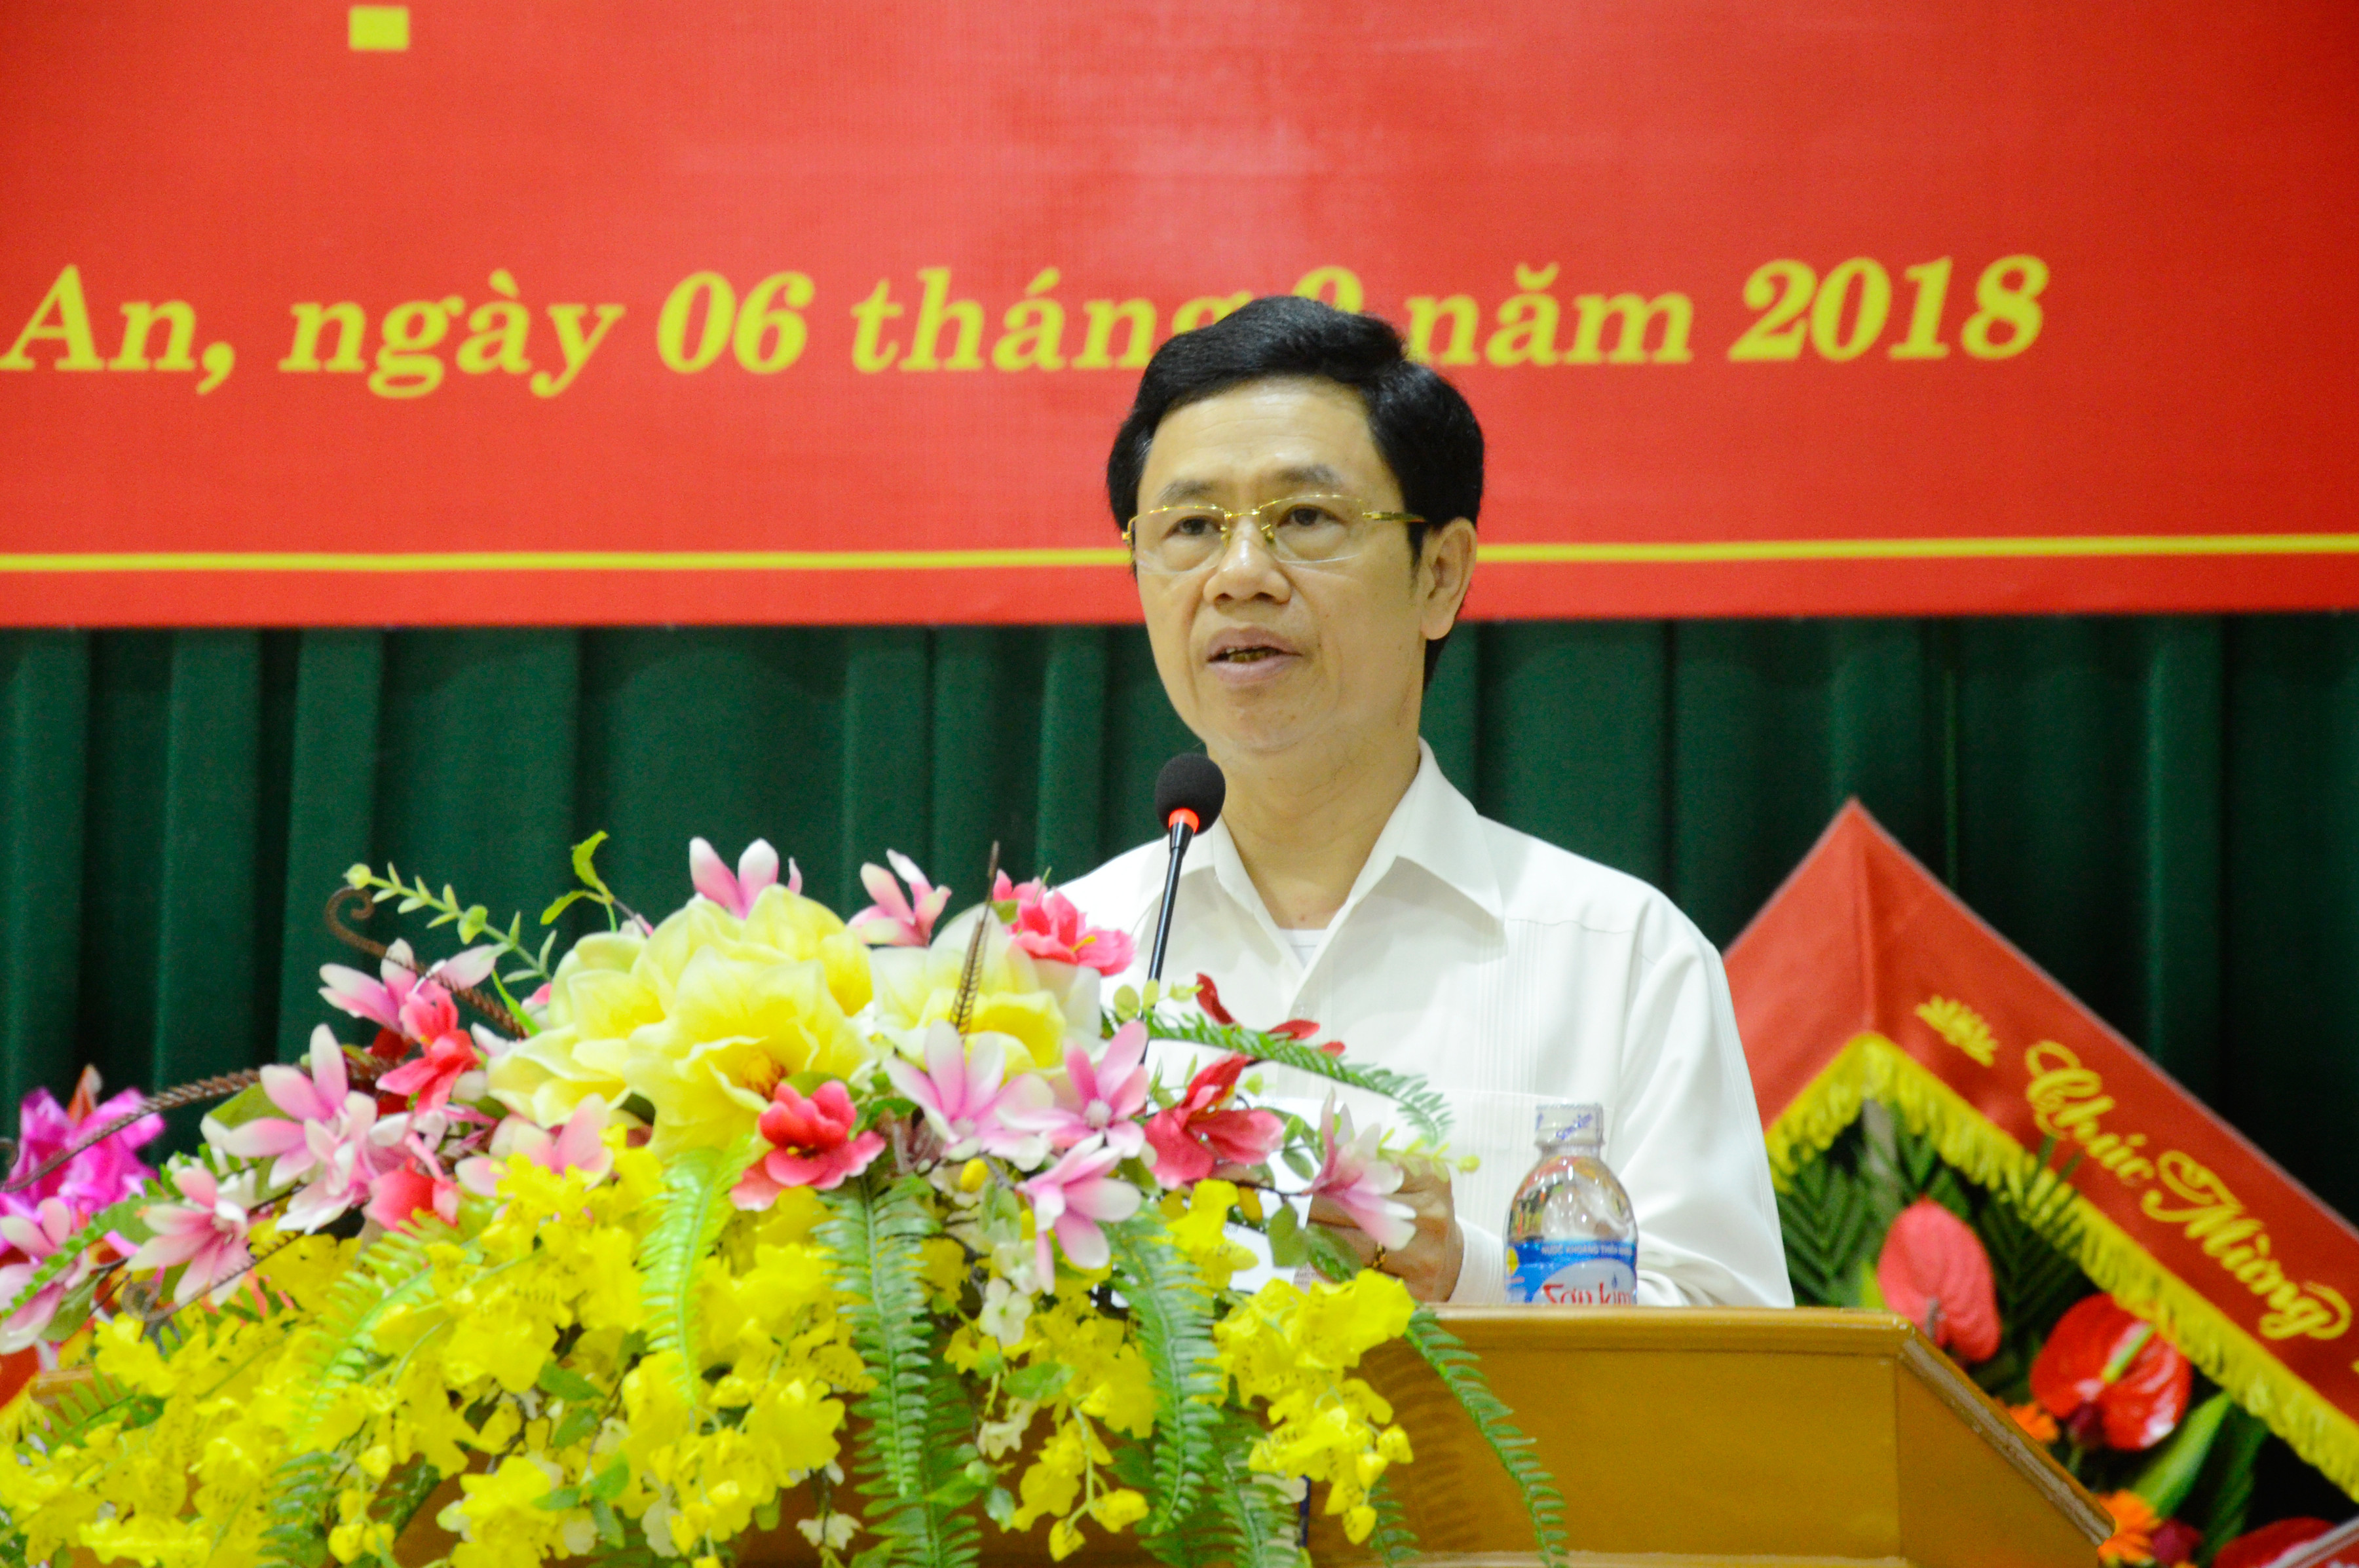 Phó Bí thư Thường trực Nguyễn Xuân Sơn phát biểu tại buổi lễ. Ảnh Thanh Lê